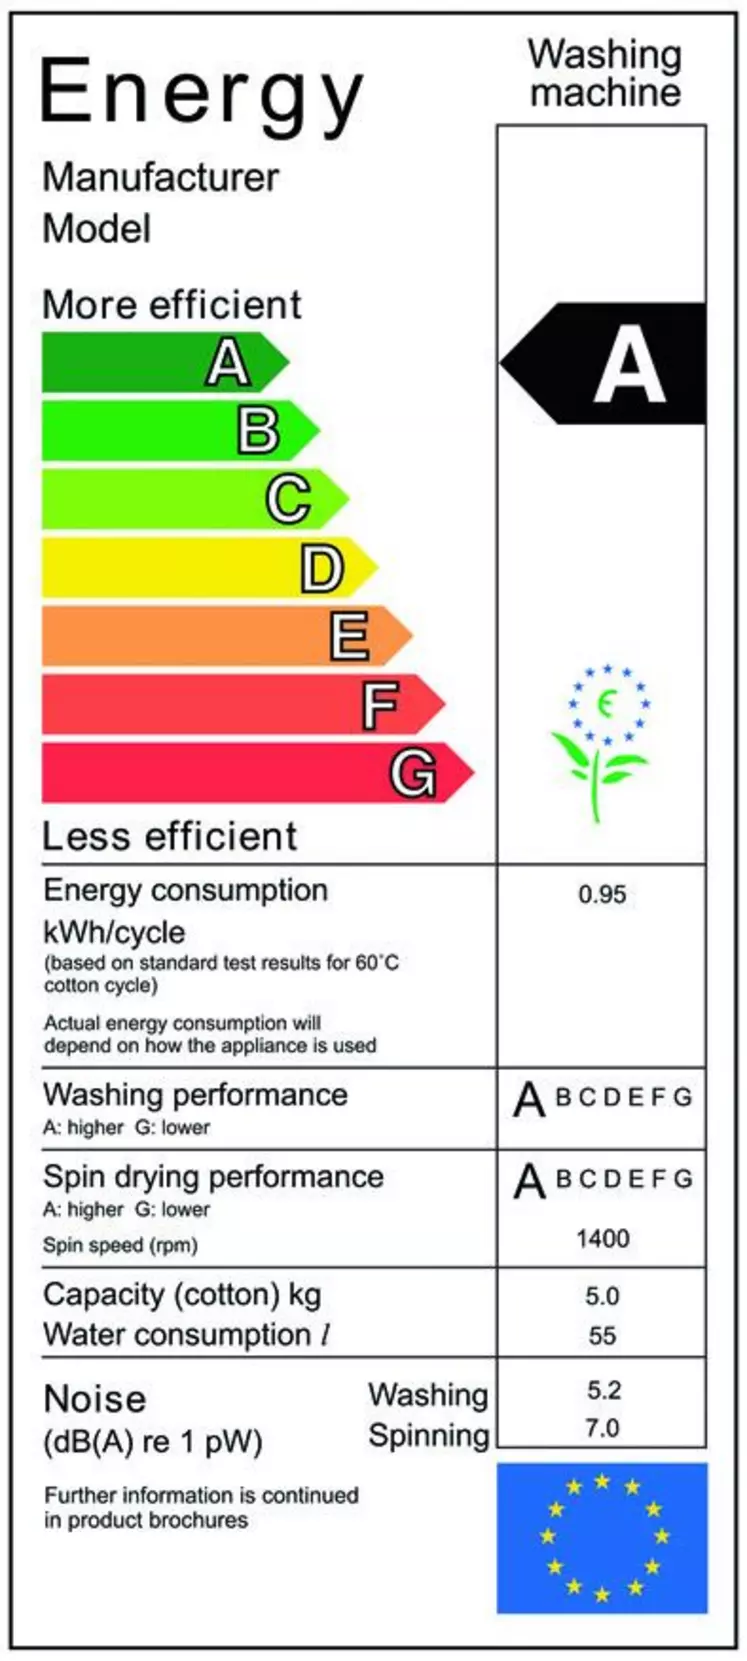 Modèle d’étiquette énergétique pour les appareils électroménagers.